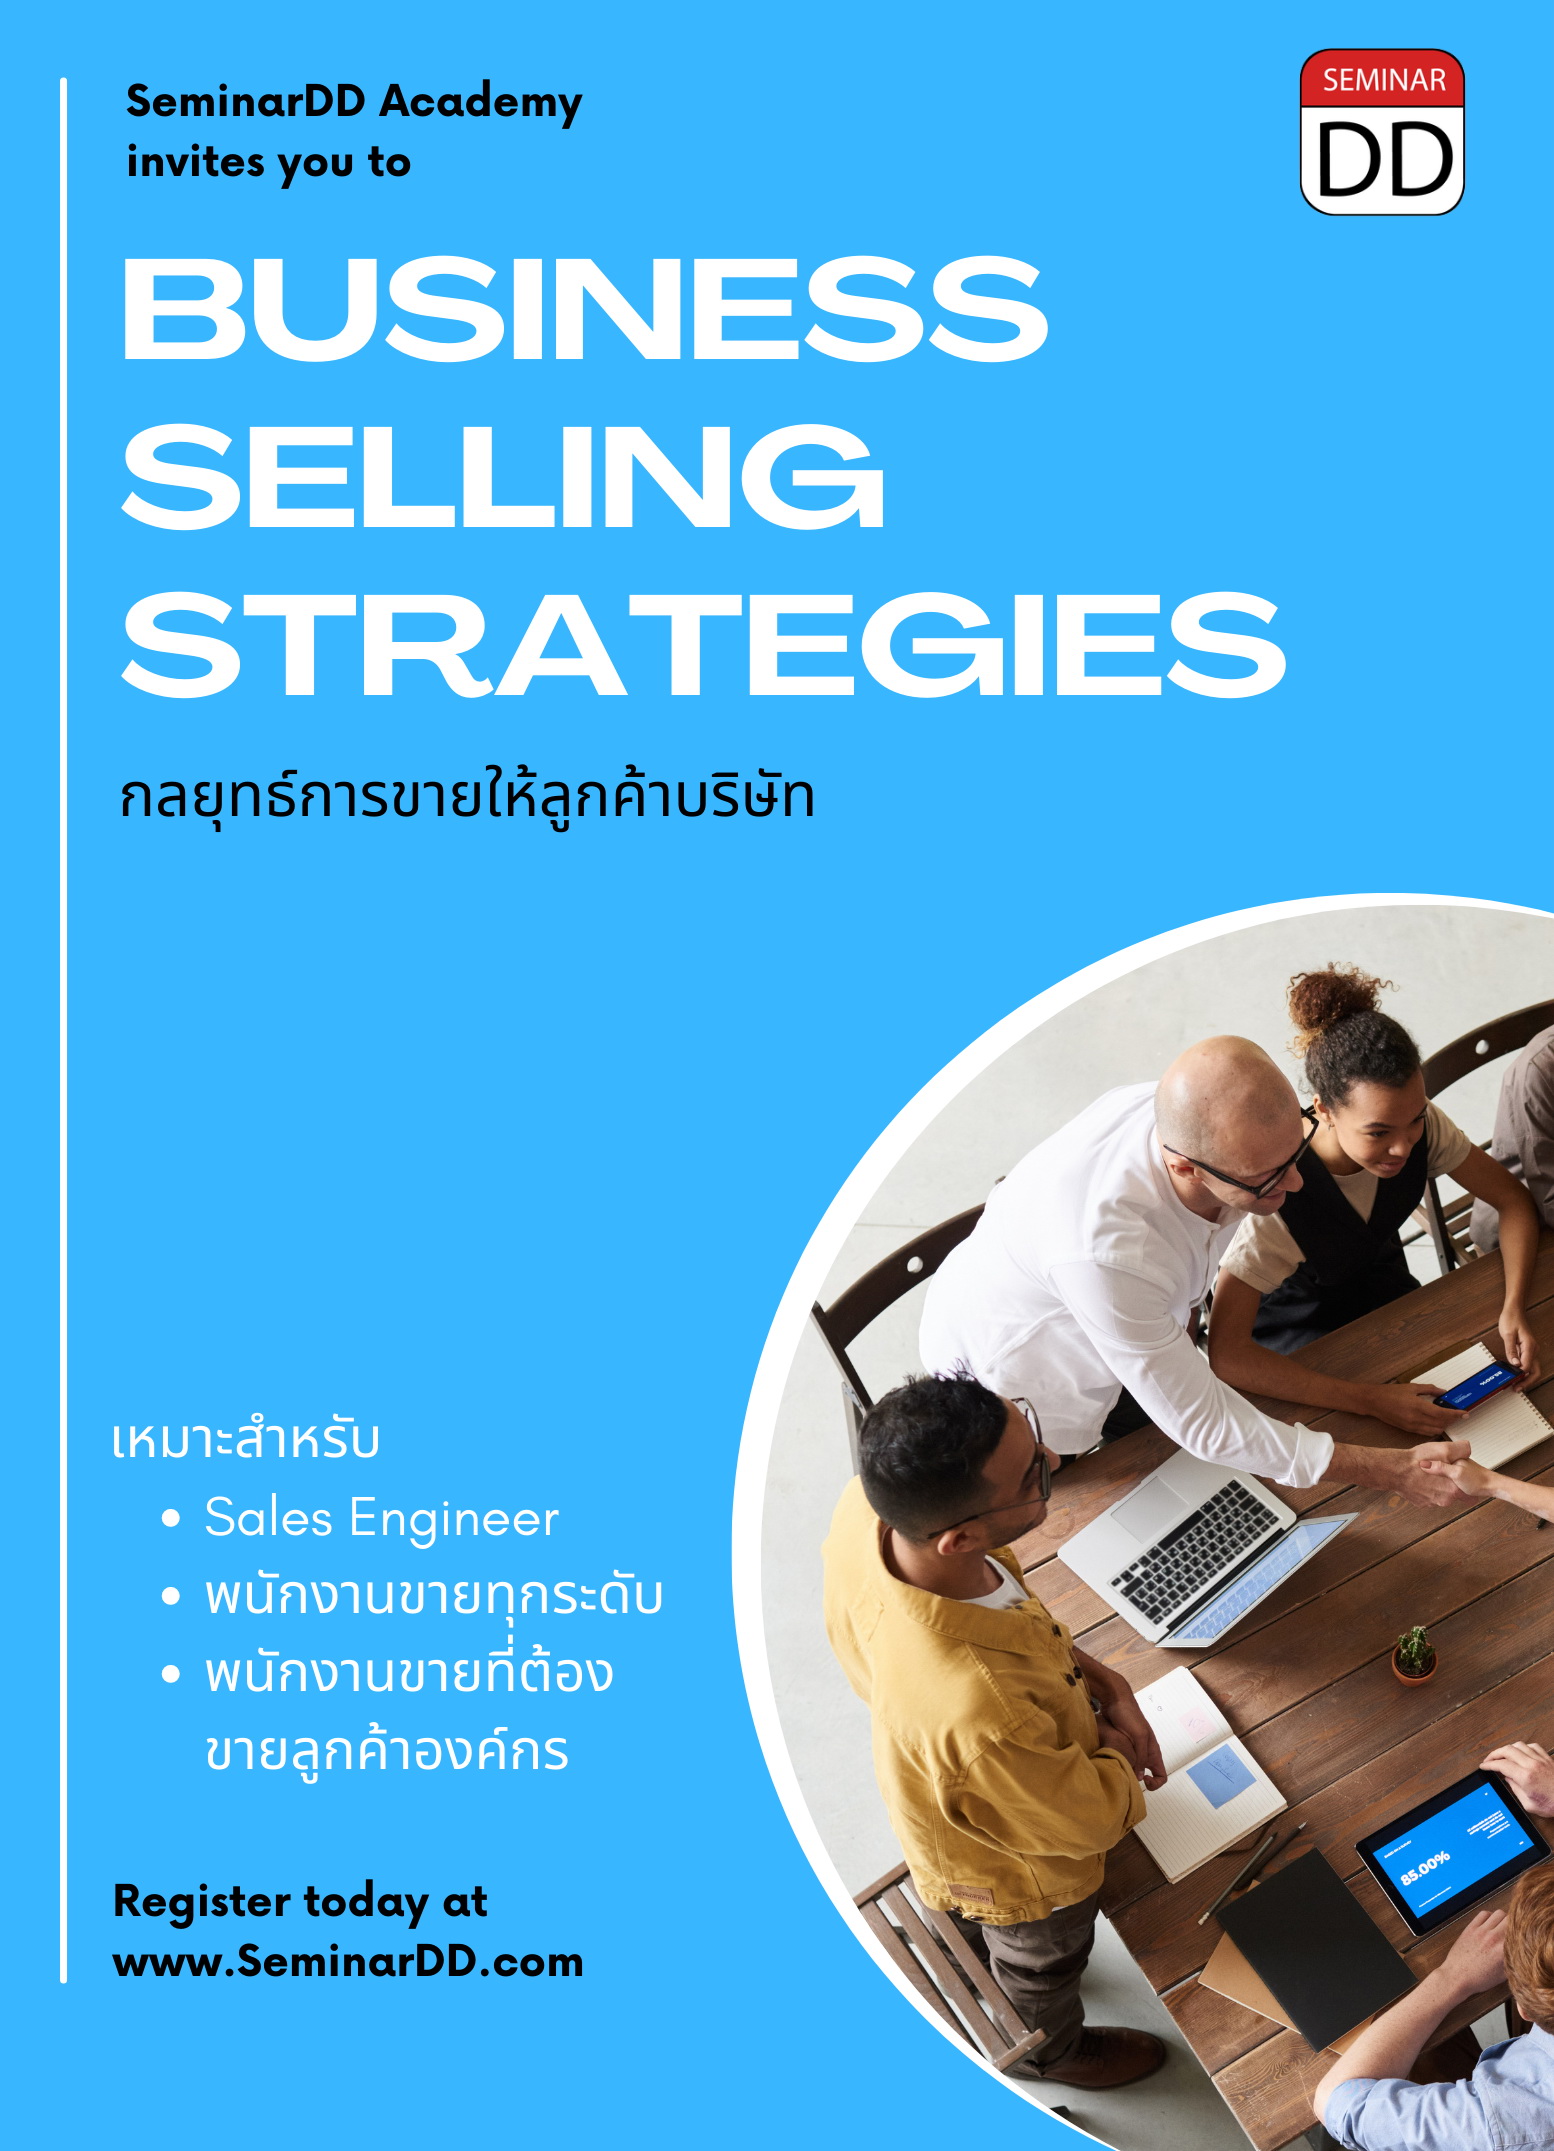 หลักสูตร กลยุทธ์การขายให้ลูกค้าบริษัท (Business Selling Strategies)